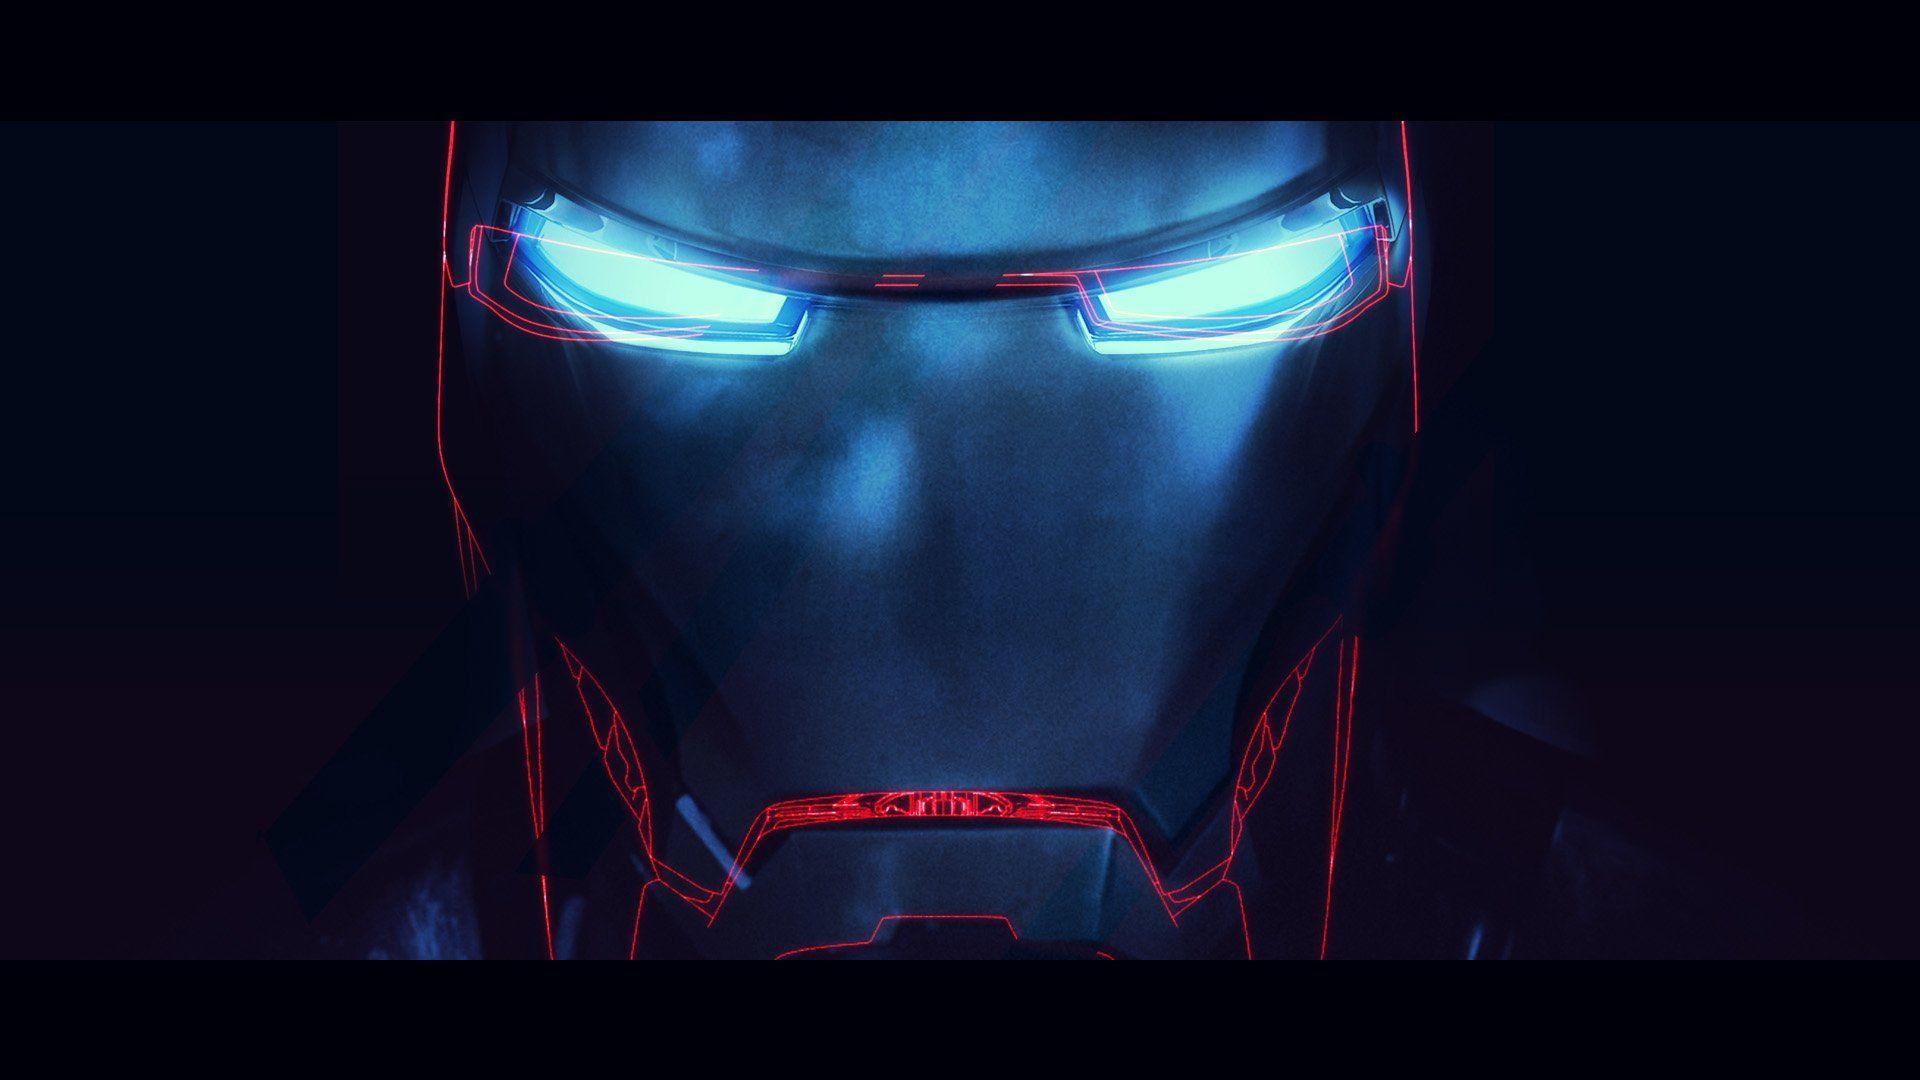 Hình nền máy tính 4k Iron Man sẽ đem lại cho bạn trải nghiệm sử dụng máy tính hoàn toàn mới lạ! Với độ nét cao, màu sắc sáng và sinh động, bạn sẽ như đang đứng trong vũ trụ Marvel và chiến đấu bên cạnh chiếc bộ đồ siêu việt Iron Man!